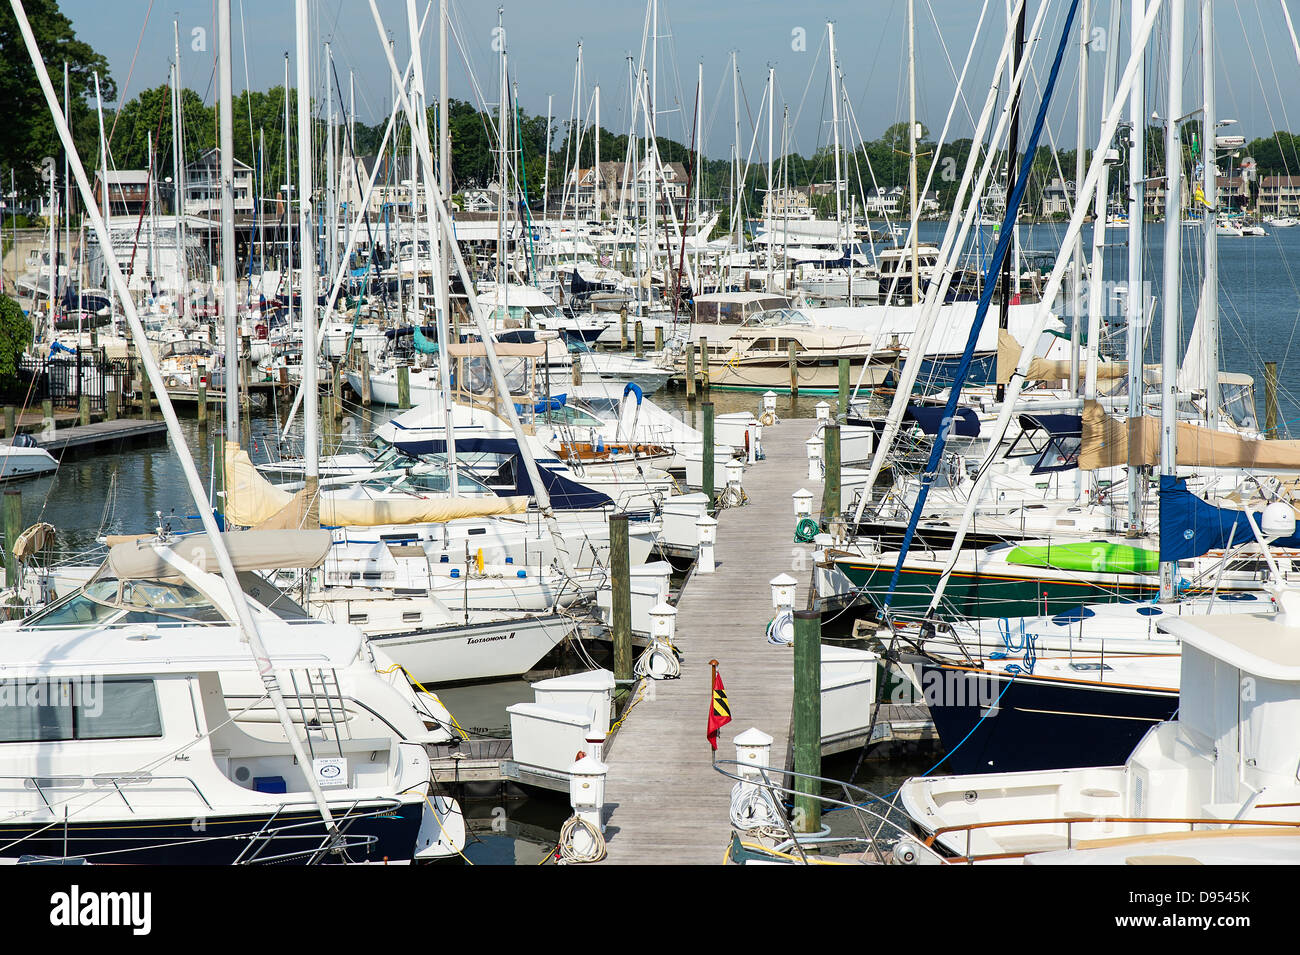 Docked sailboats, Annapolis, Maryland, USA Stock Photo